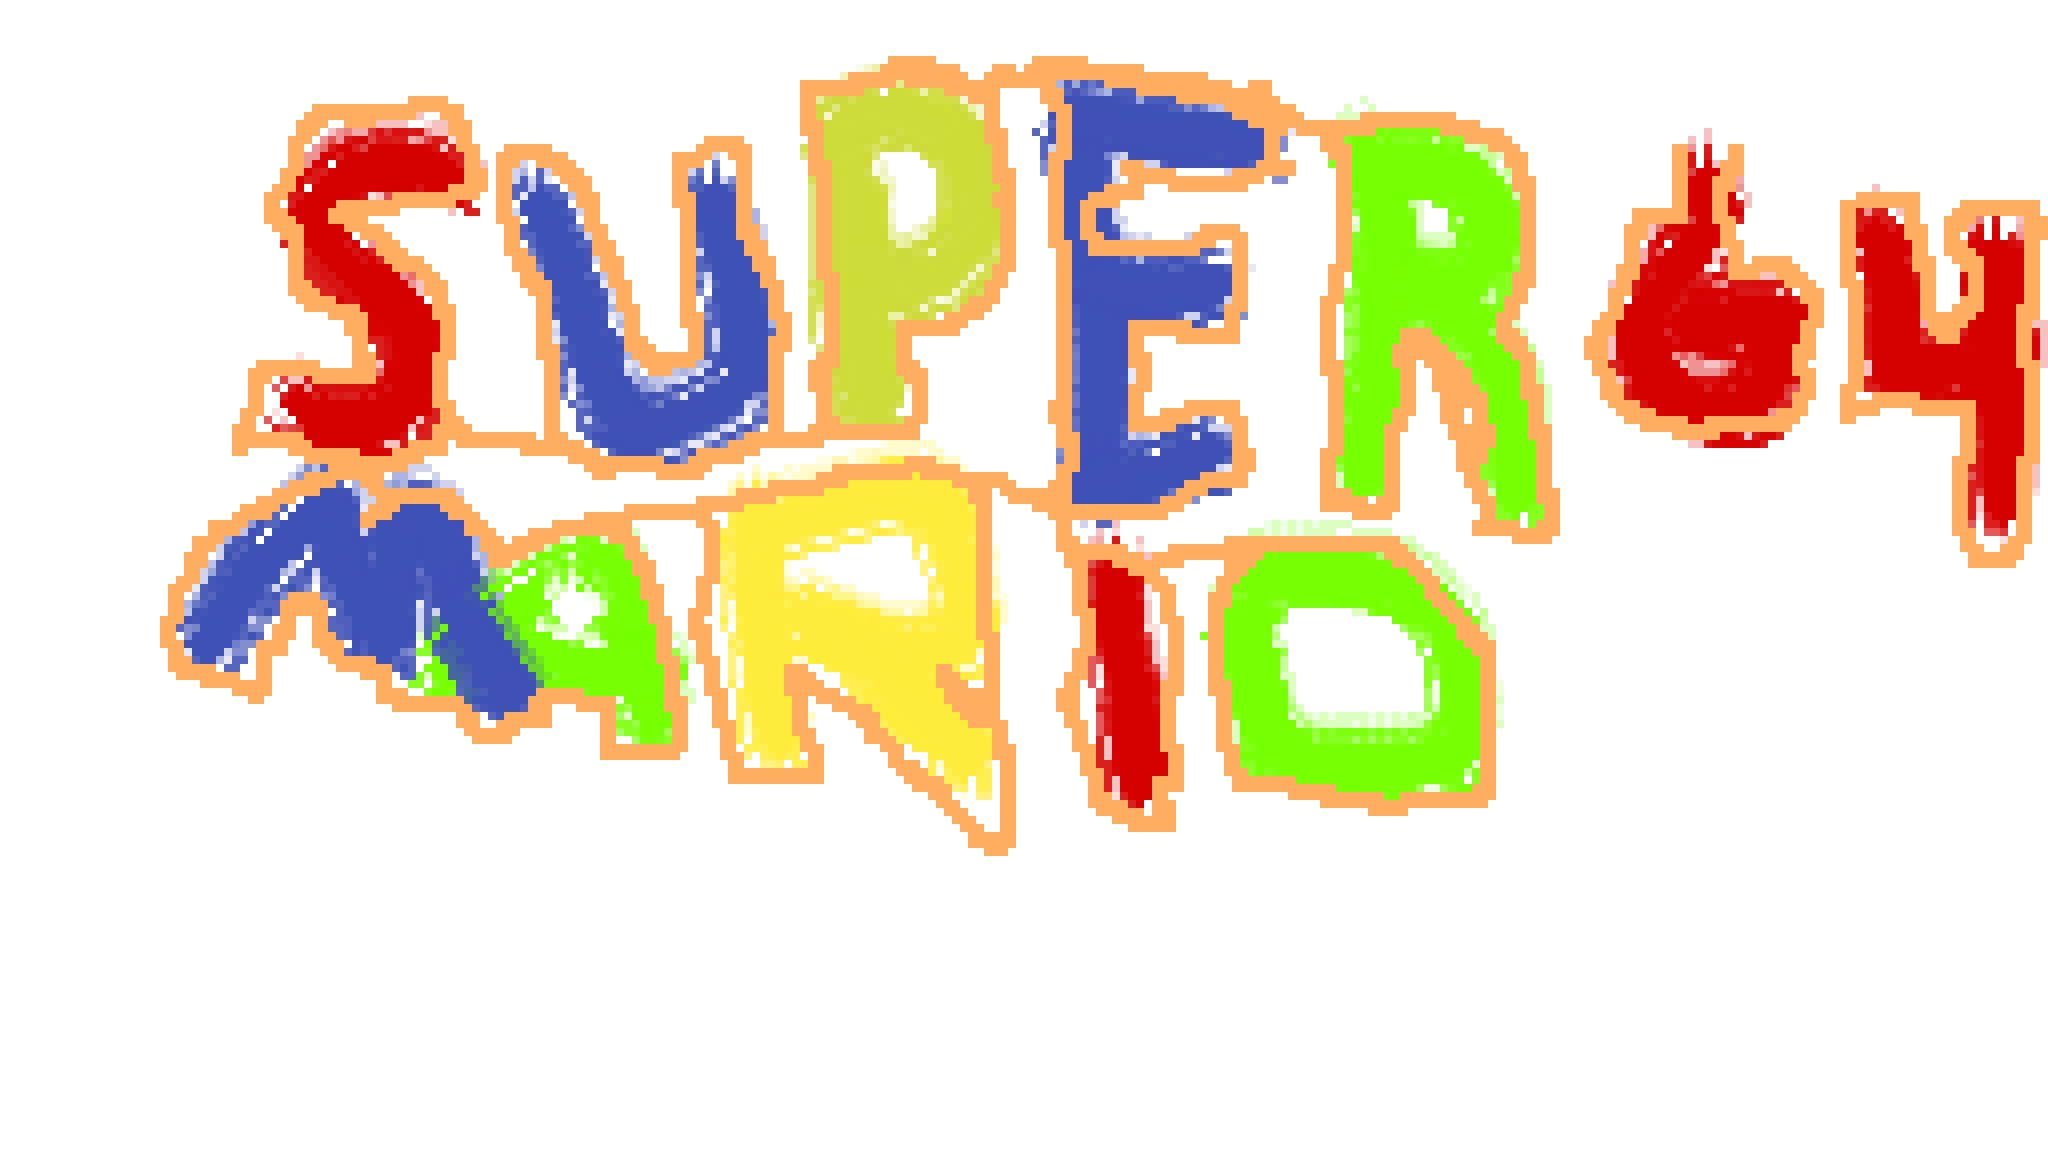 Super Mario 64 Logo Transparent Image